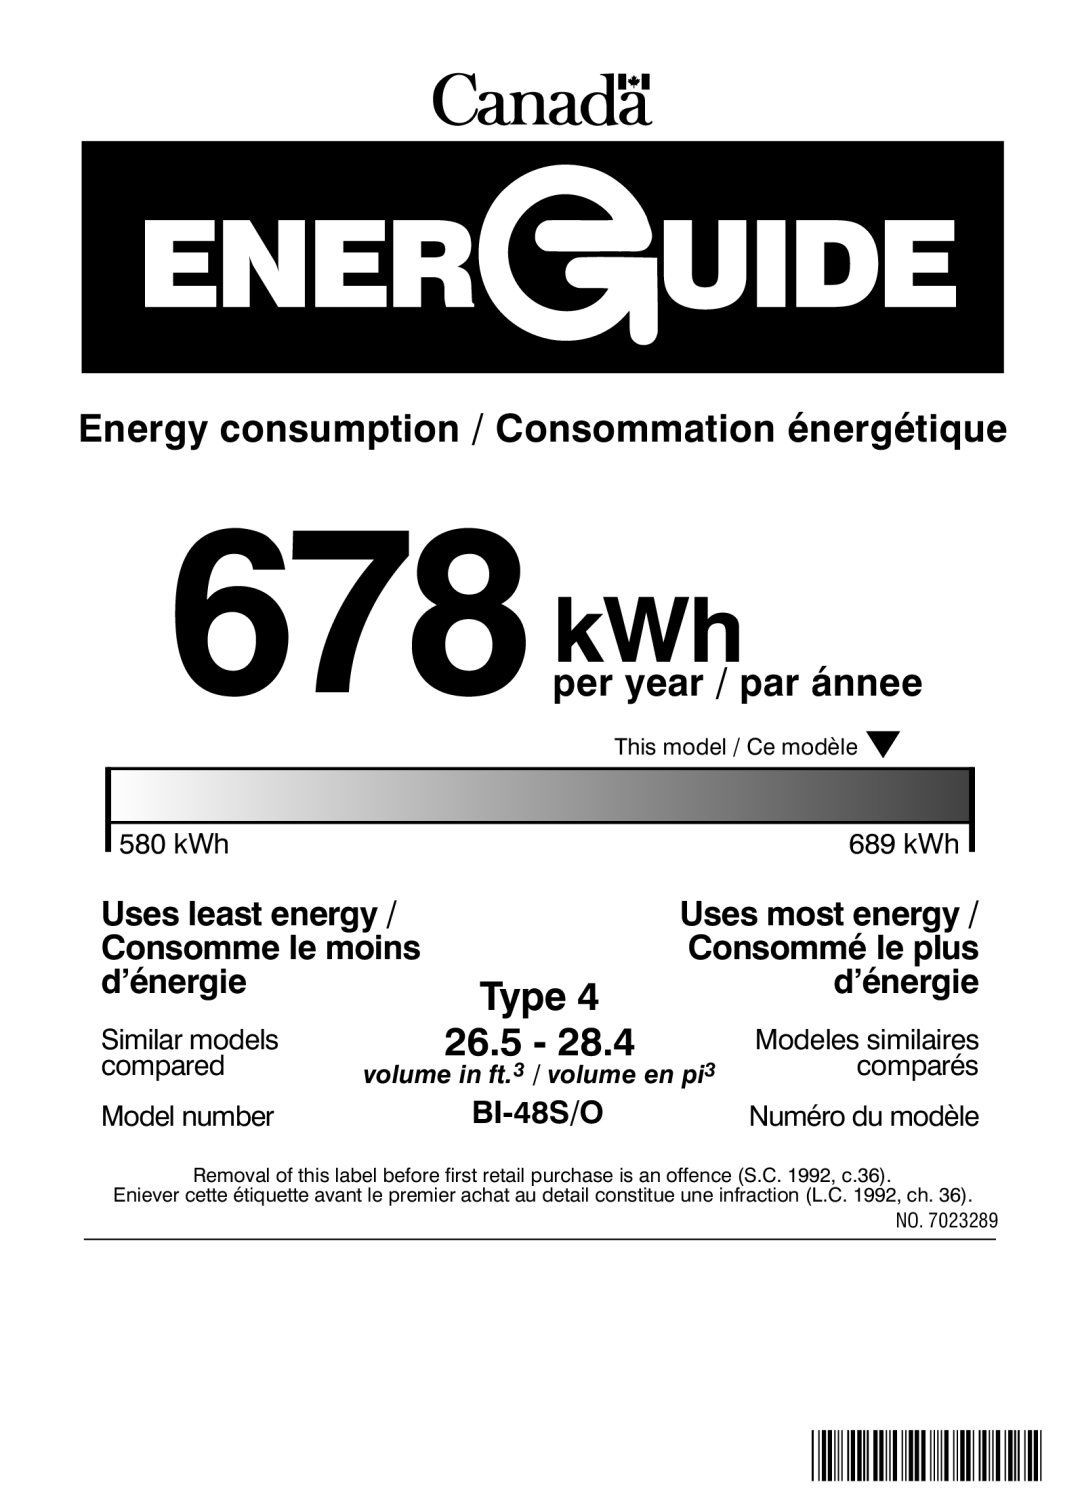 Sub-Zero BI-48S/O manual 678kWh, Energy consumption / Consommation énergétique, per year / par ánnee, 26.5, Type, d’énergie 